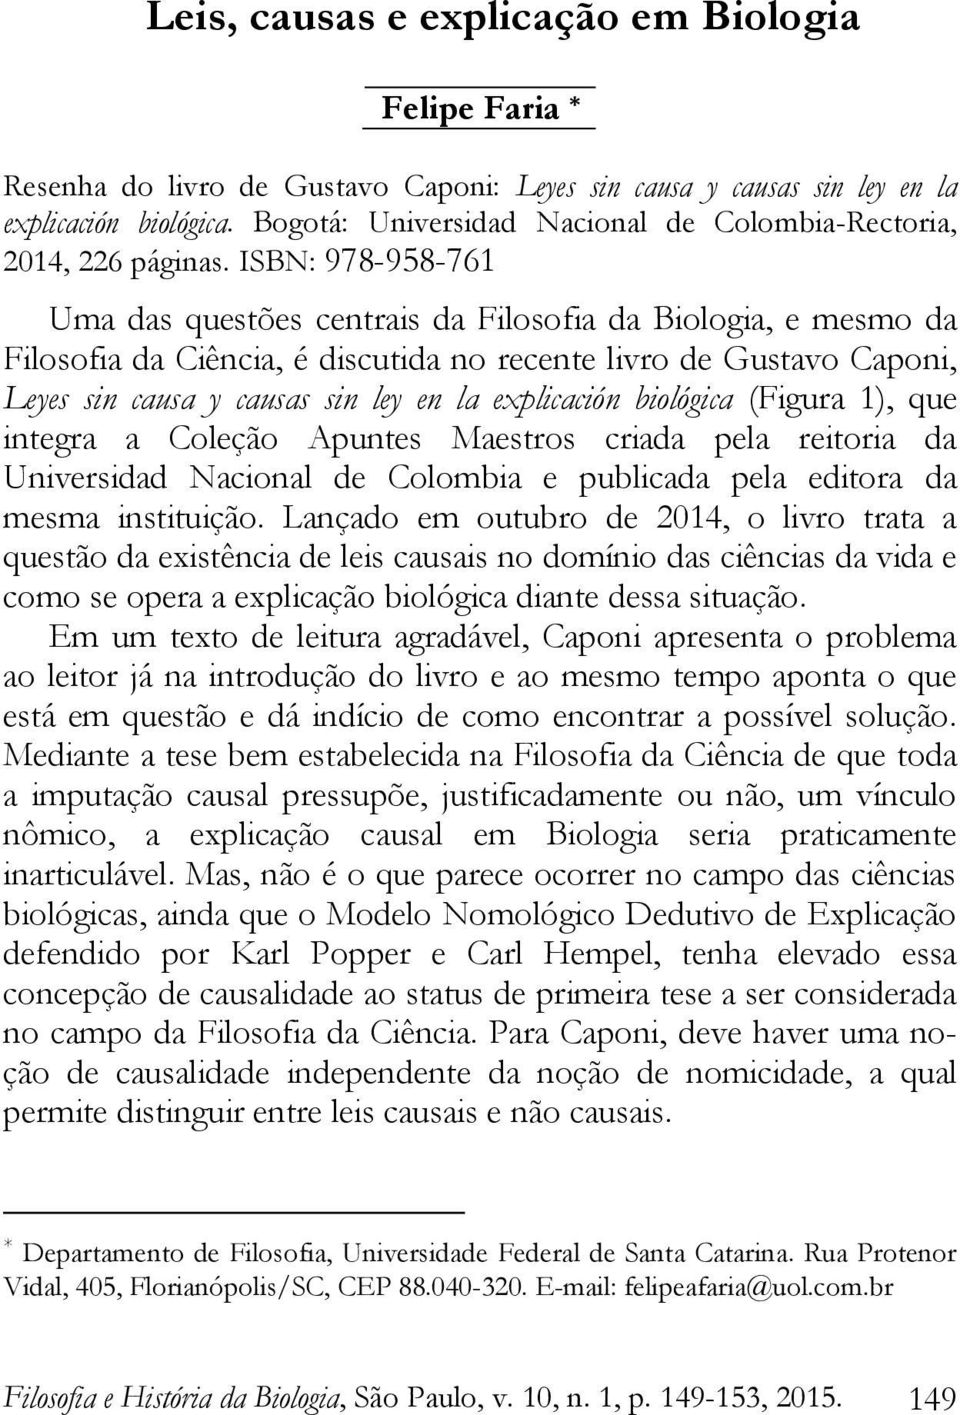 ISBN: 978-958-761 Uma das questões centrais da Filosofia da Biologia, e mesmo da Filosofia da Ciência, é discutida no recente livro de Gustavo Caponi, Leyes sin causa y causas sin ley en la